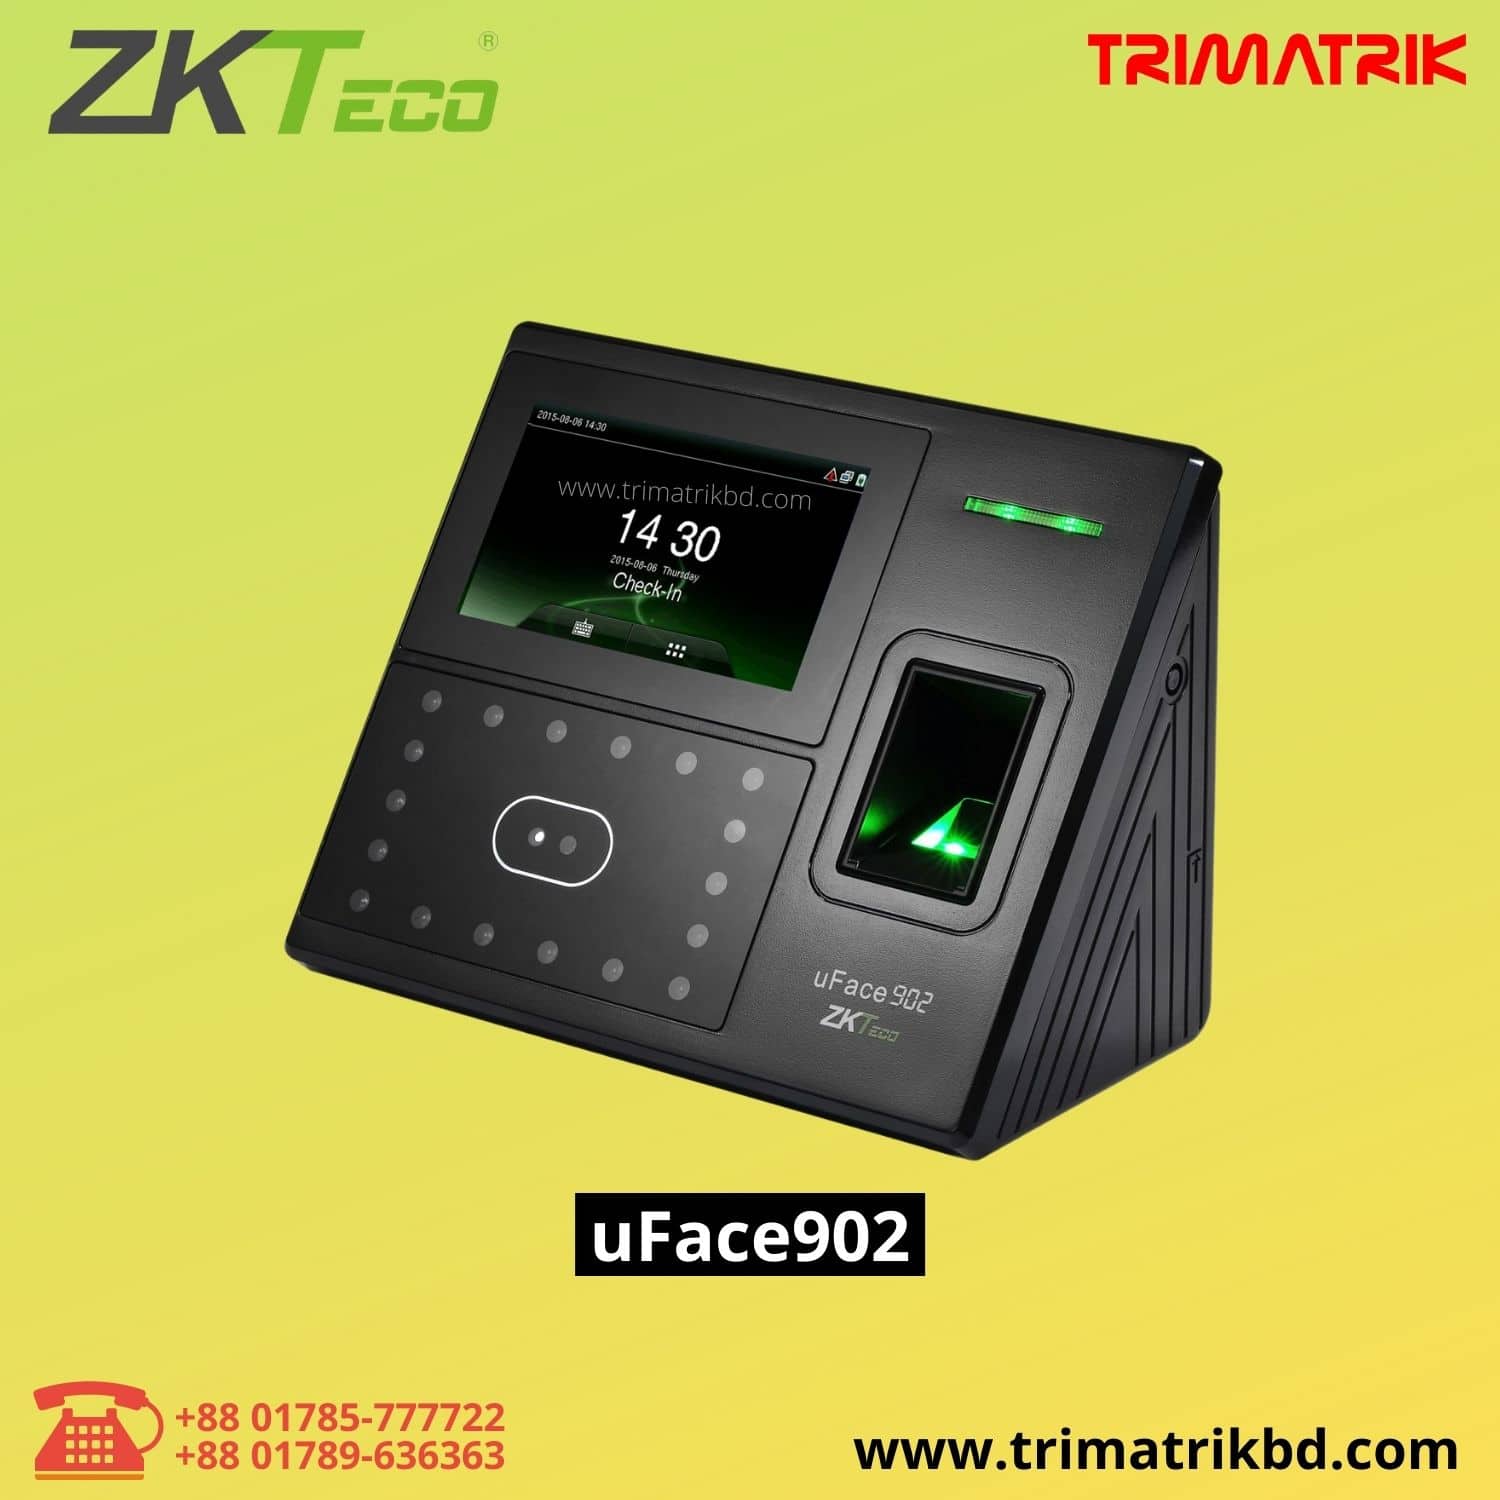 ZKTeco uFace902 Face Recognition & Fingerprint Time Attendance Terminal